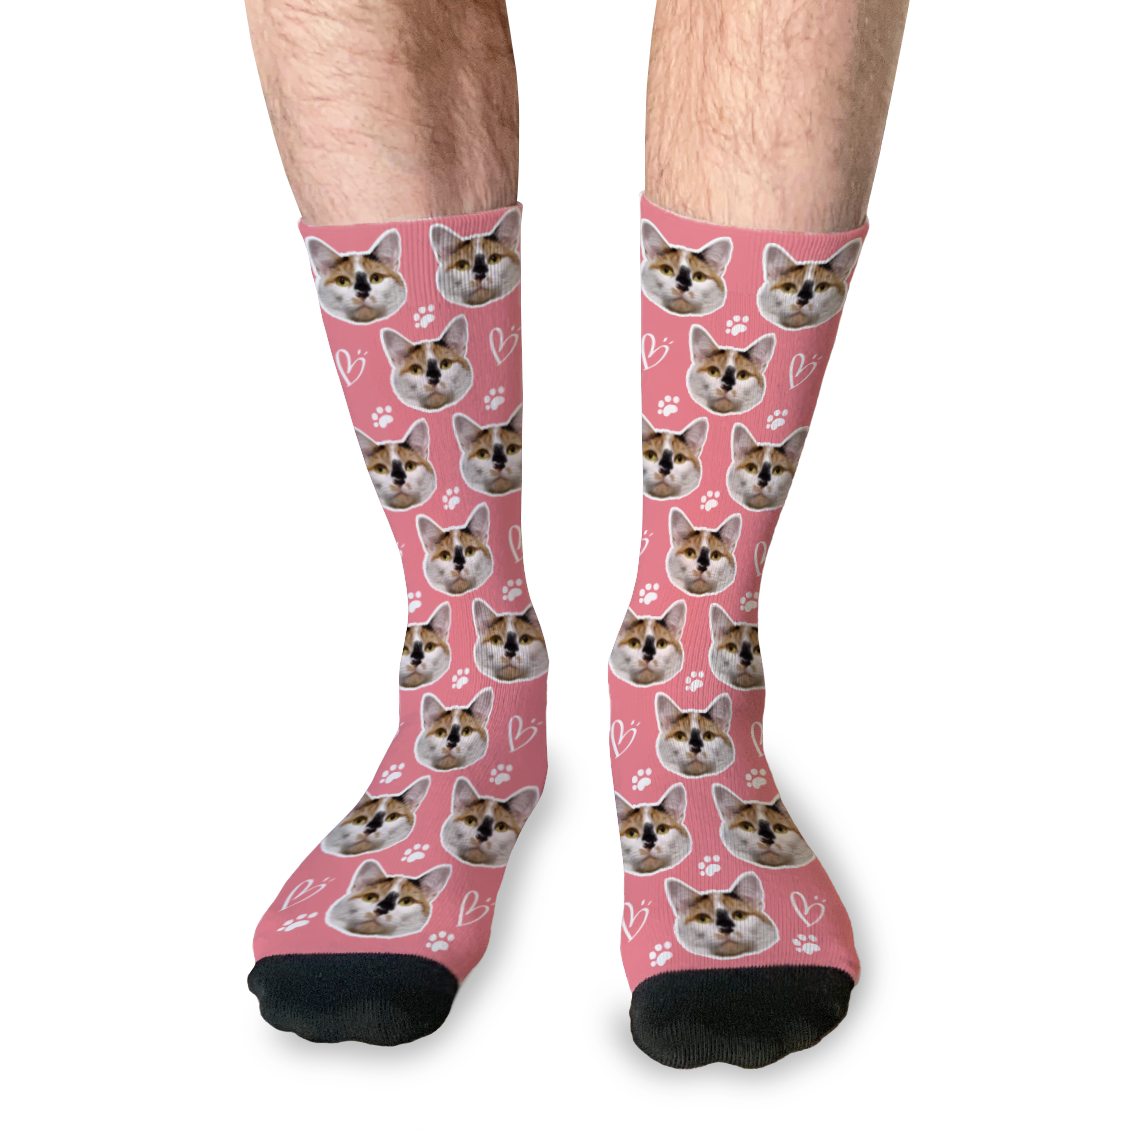 Socks Personalizados Edición Digital